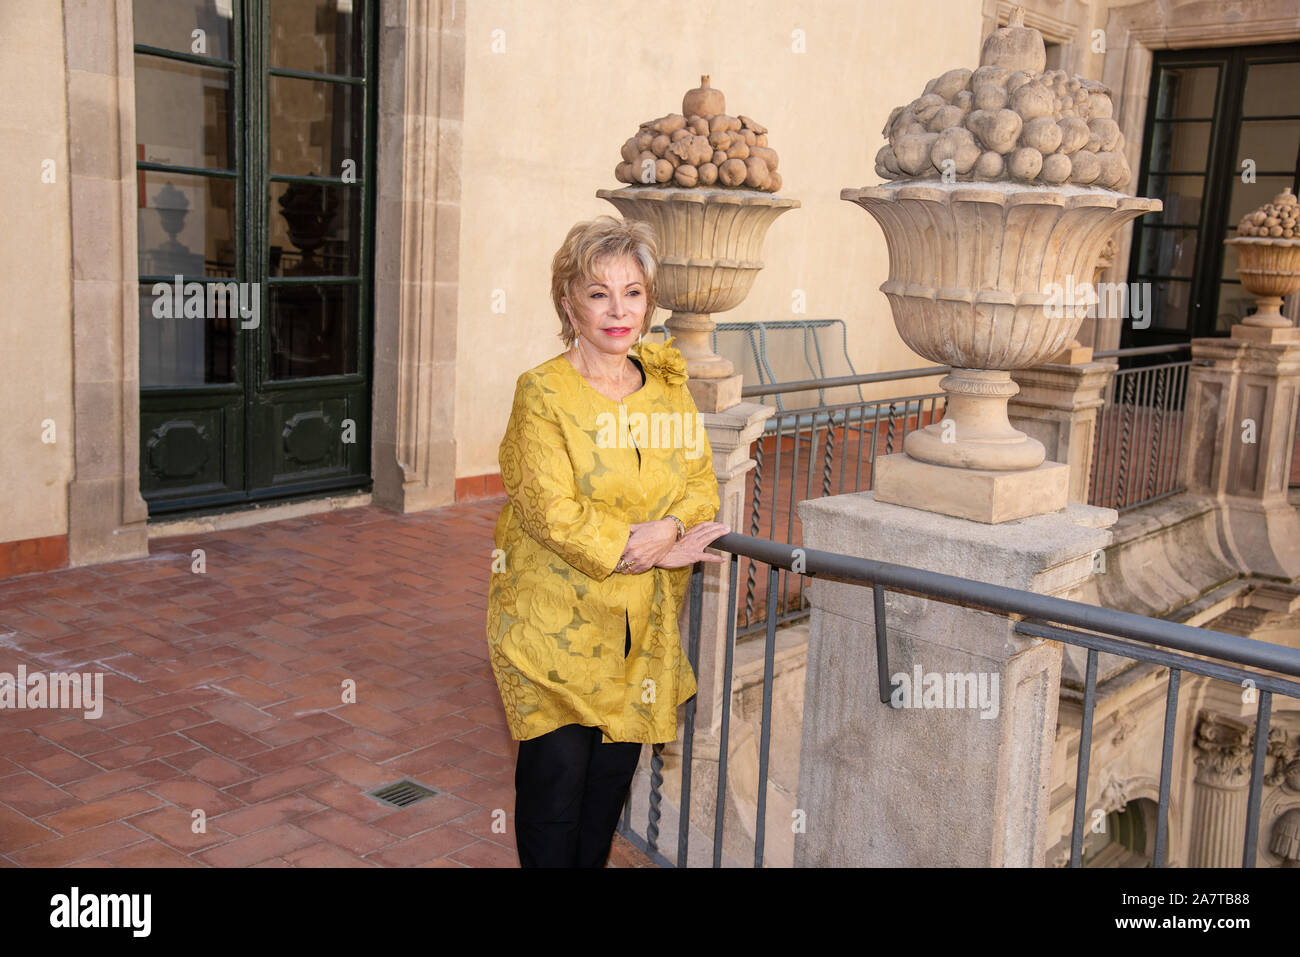 Barcelona España 04/11/2019 Isabel Allende Barcino Premio de Novela Histórica Vivimos tiempos de oscuridad", dijo la célebre escritora chilena Isabel Banque D'Images